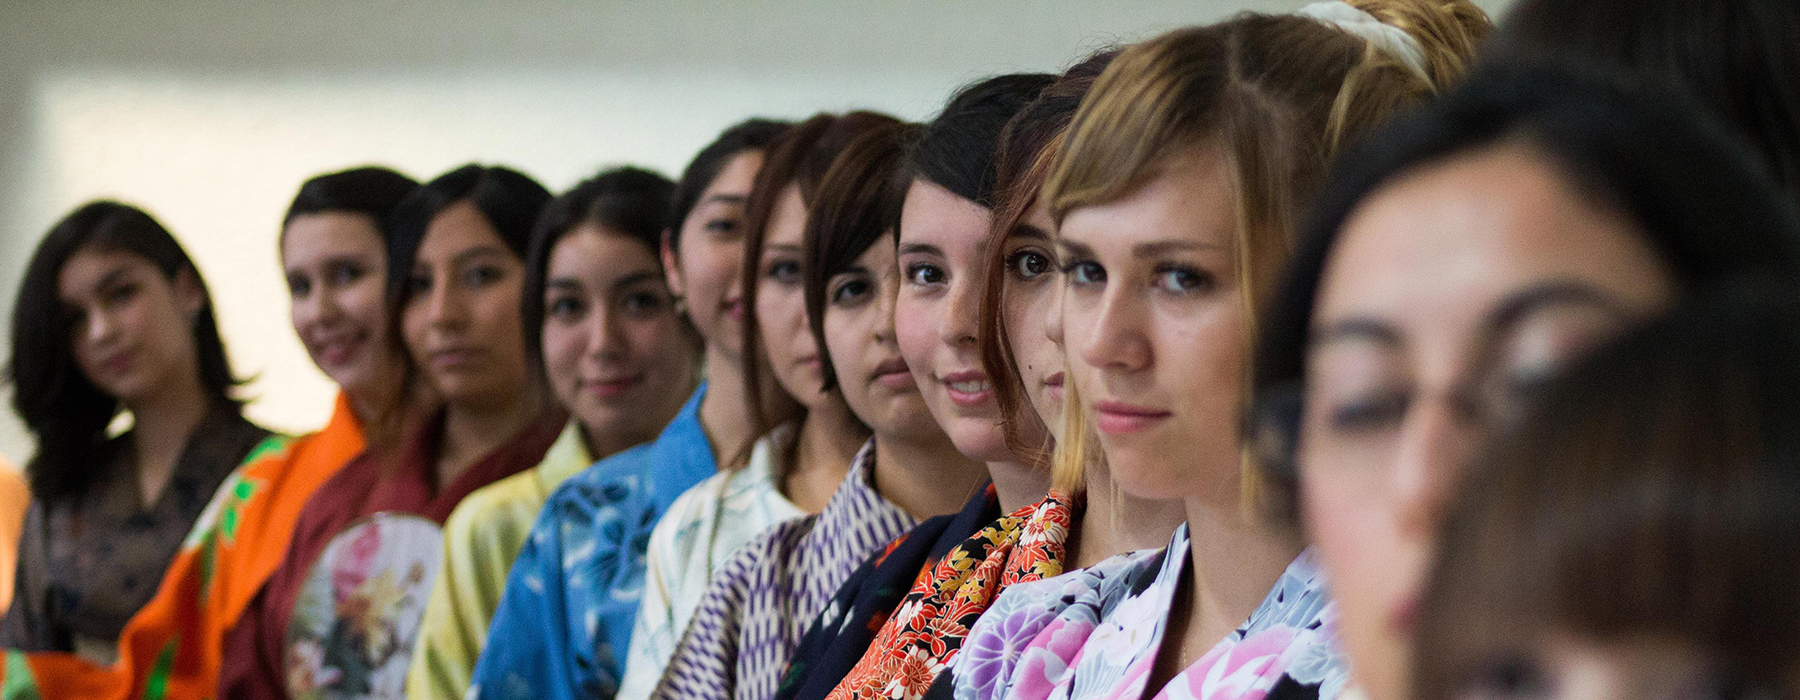 Ragazze europee e asiatiche in fila che indossano kimono colorati